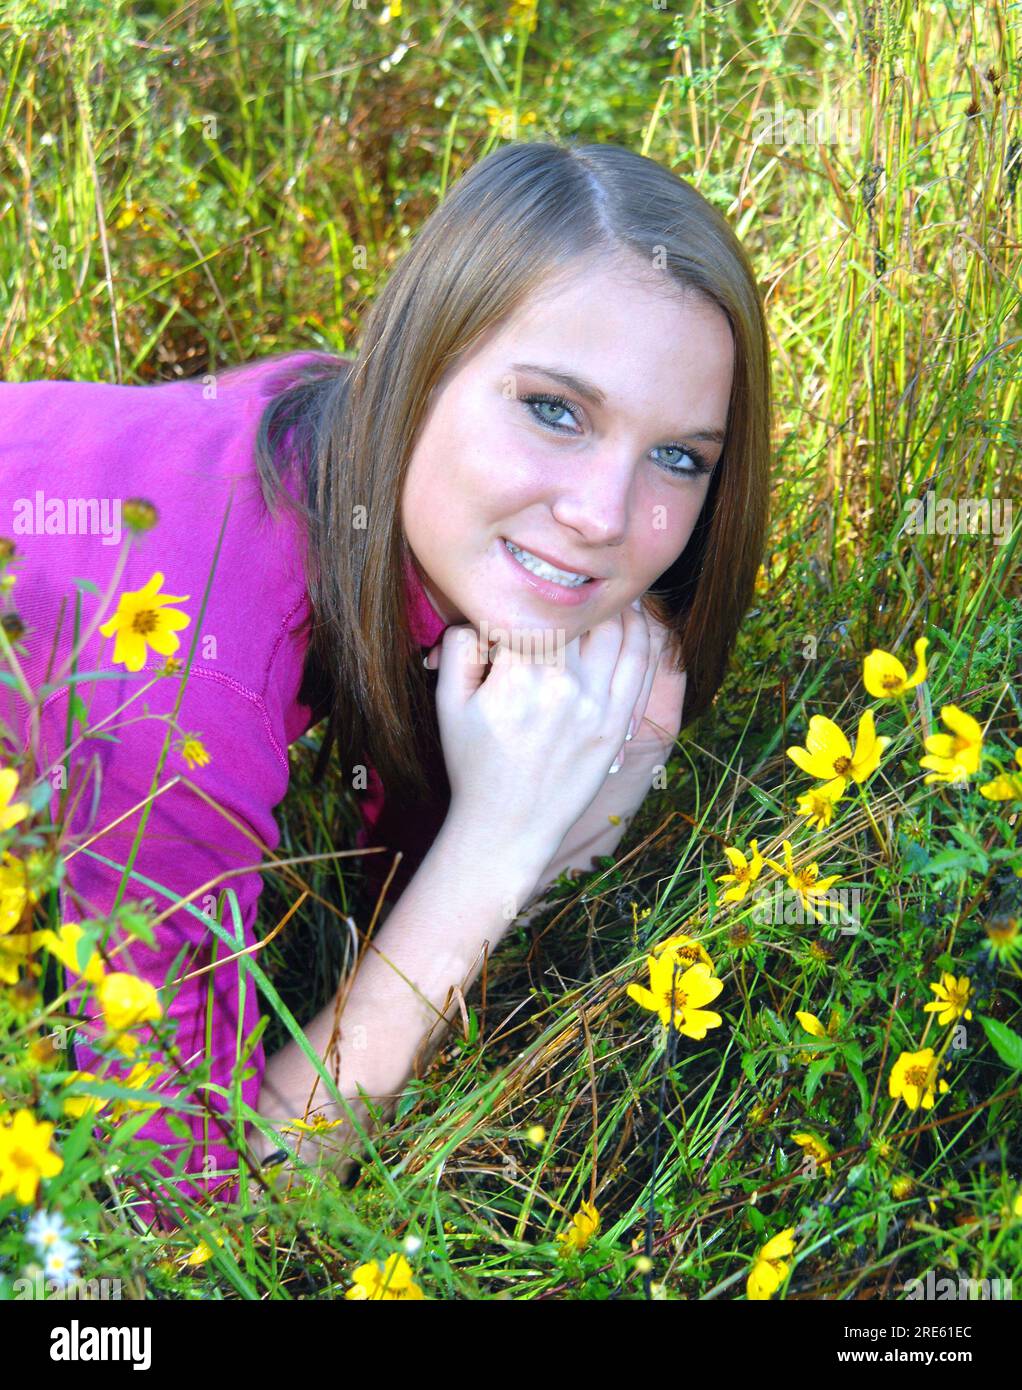 Auf einer Wiese voller Wildblumen lacht die junge Frau und genießt es, am frühen Morgen mit der Natur zu kommunizieren. Stockfoto